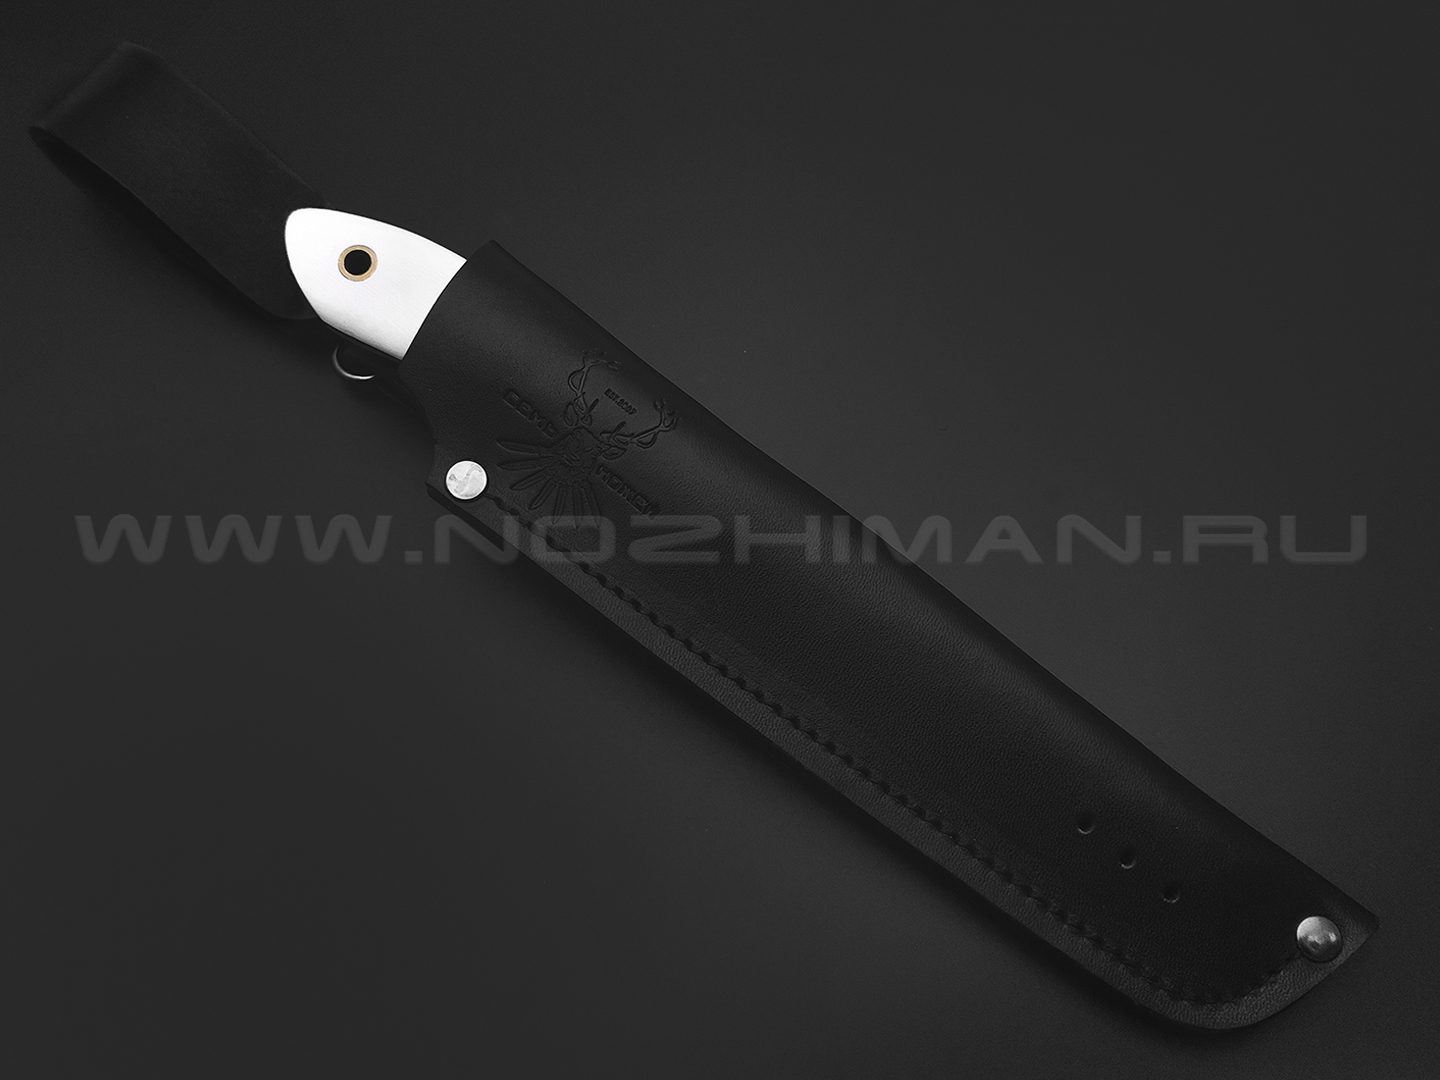 7 ножей нож Ц1 сталь VG-10 satin, рукоять G10 white & black